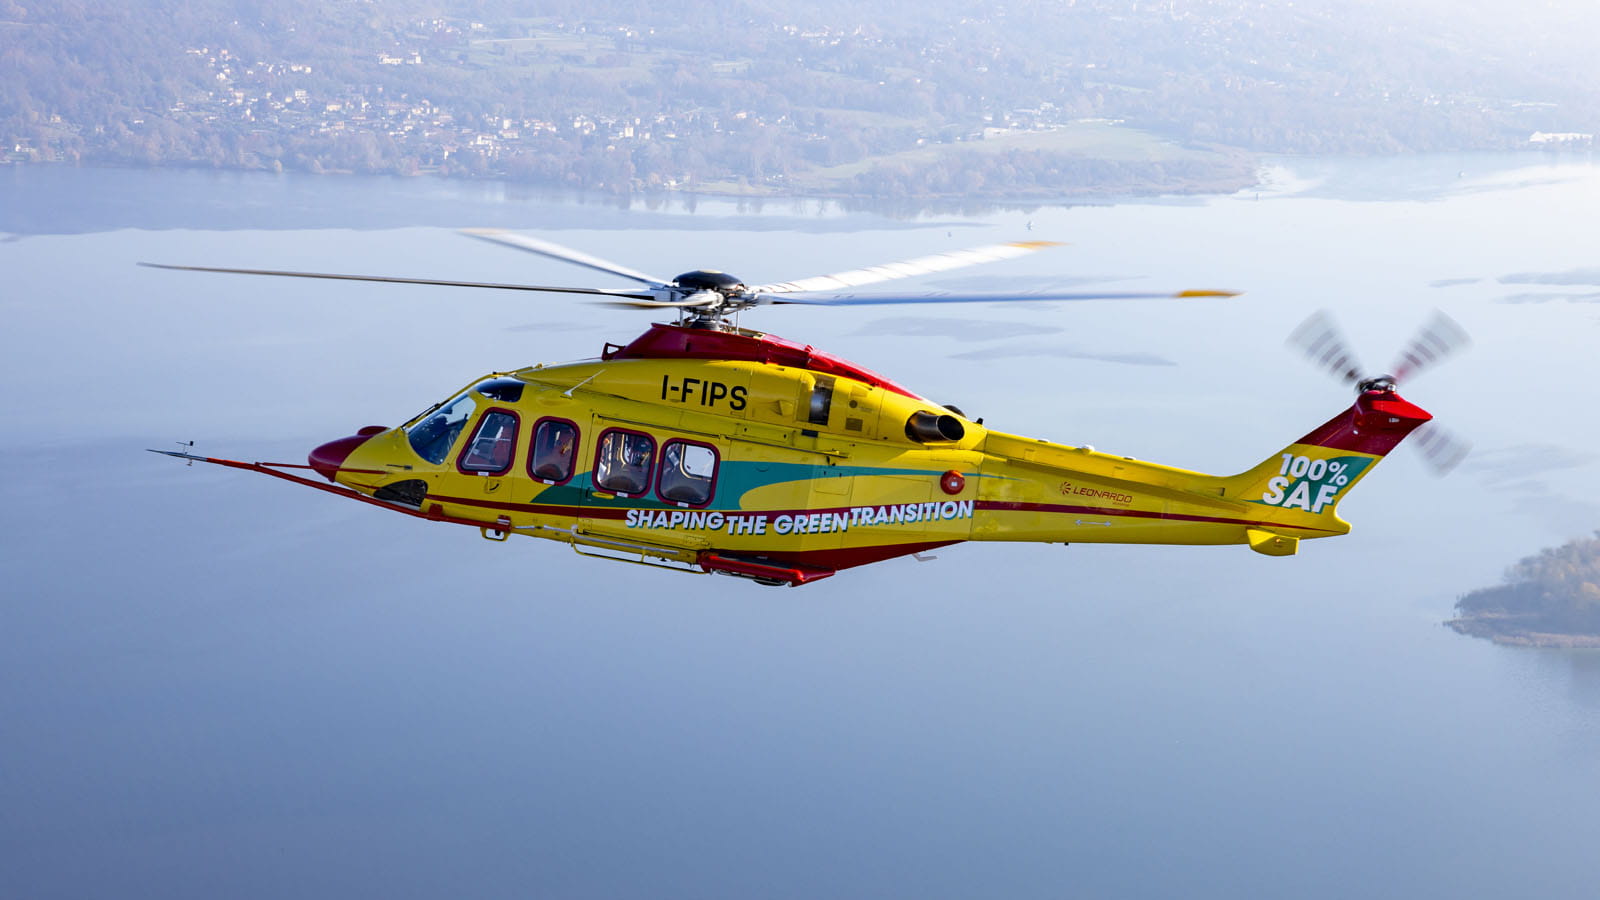 Helikoptéra AW139, která provedla první let se 100% SAF palivem. Ve vzduchu byla 75 minut a všechny testy dopadly podle testujících společností úspěšně.